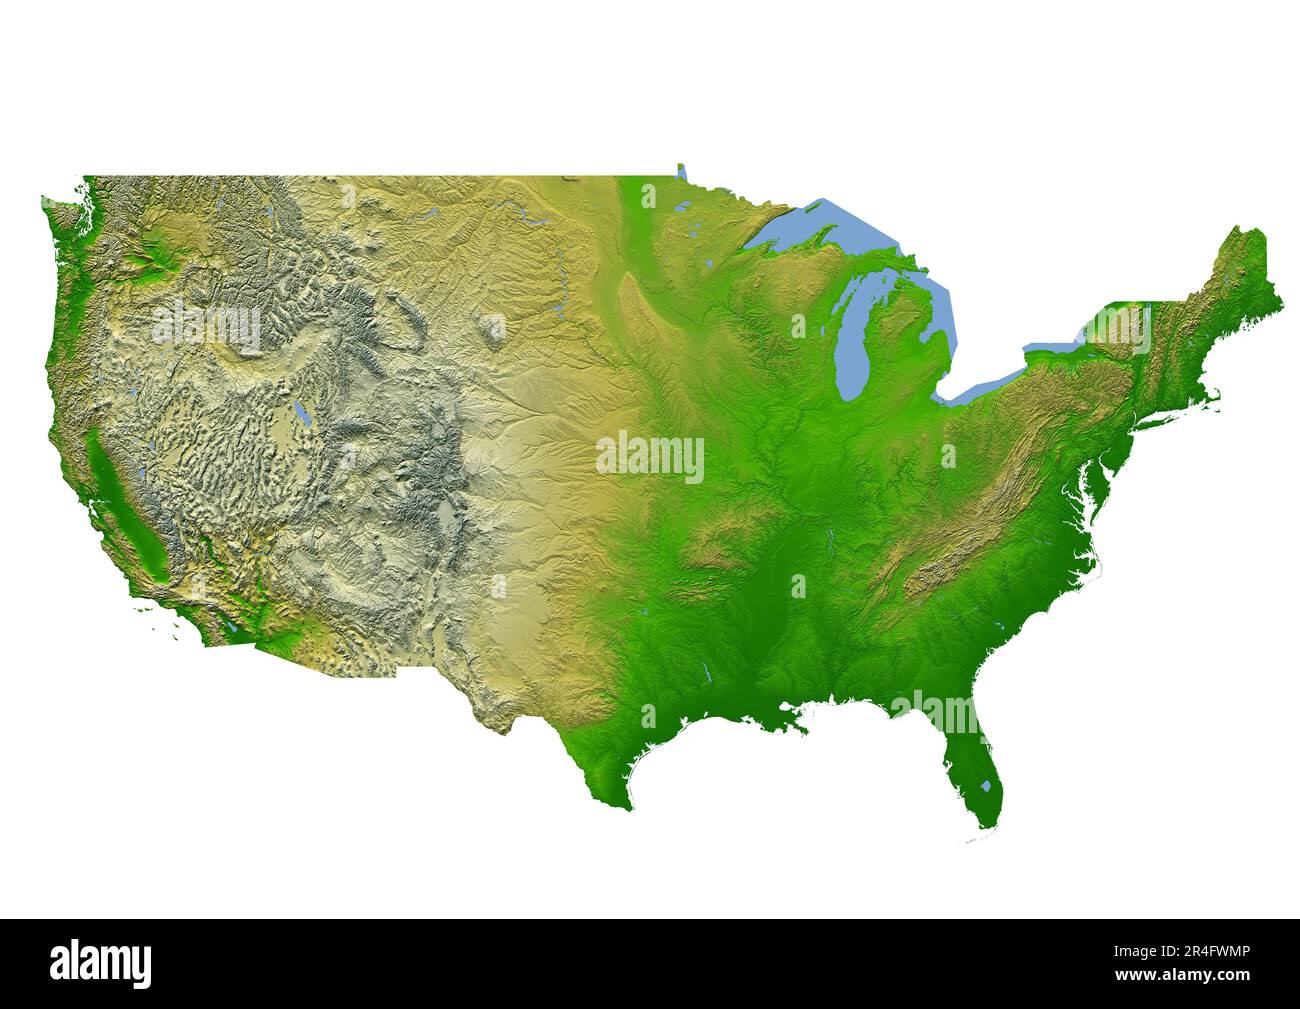 Die Karte der Vereinigten Staaten von Amerika zeigt vielfältige Reliefs, darunter Ebenen, Ebenen, Regenwälder und große Flüsse Stockfoto